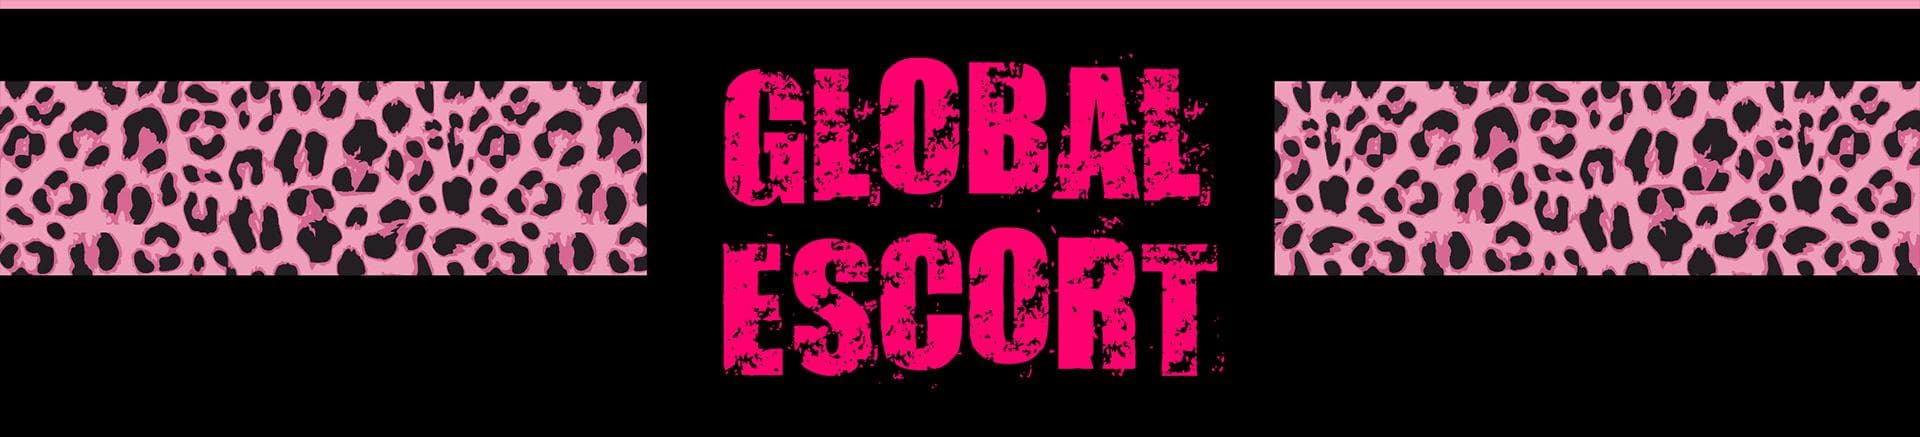 global-escort